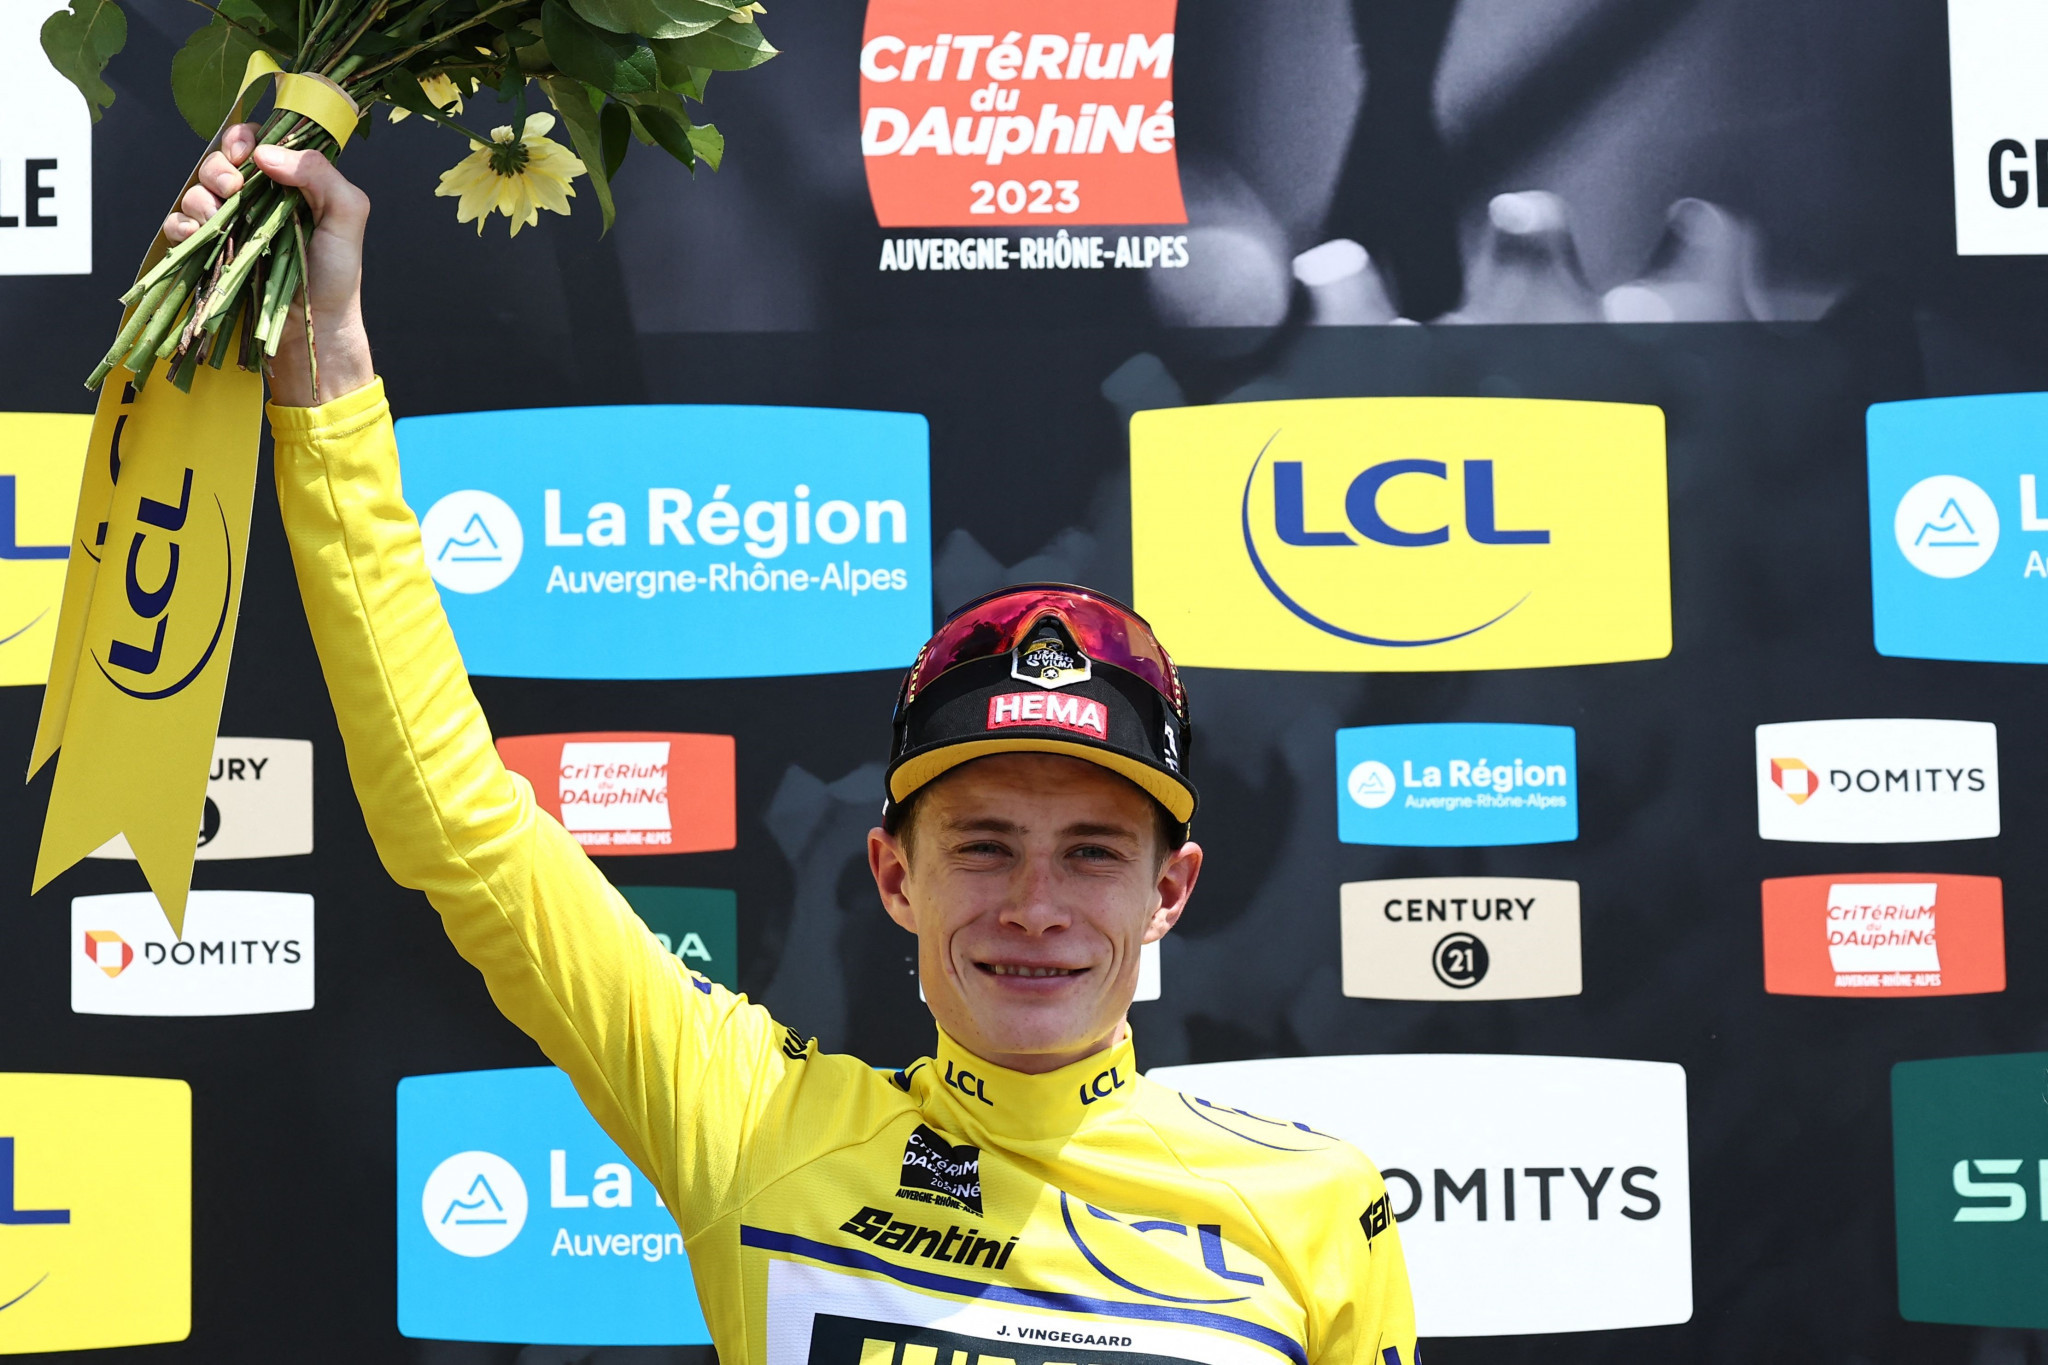 Denmark's Tour de France champion Jonas Vingegaard celebrates winning the overall title at the Critérium du Dauphiné ©Getty Images